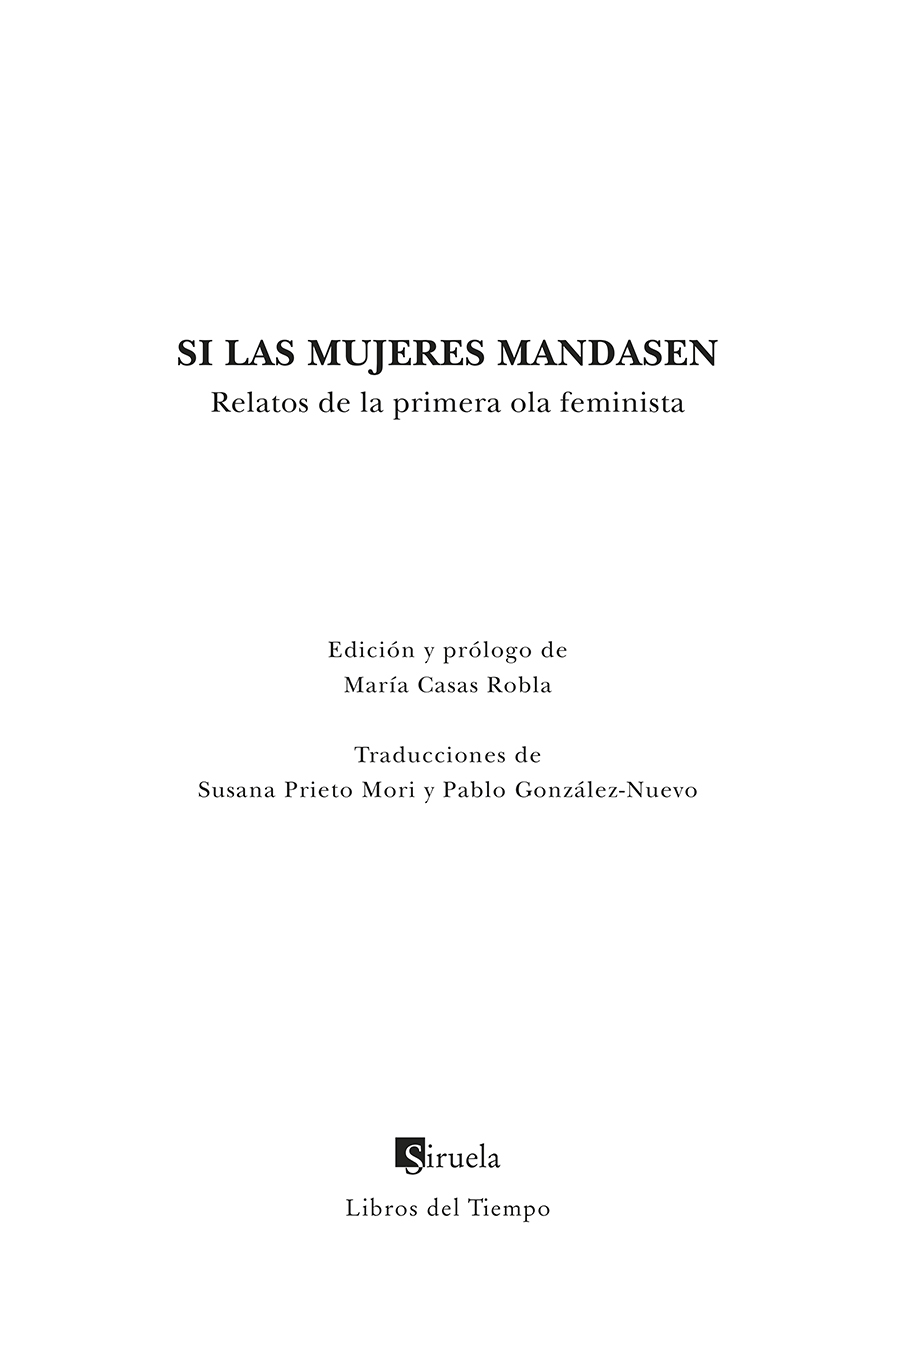 Portadilla: Si las mujeres mandasen. María Casas Robla (Ed.)